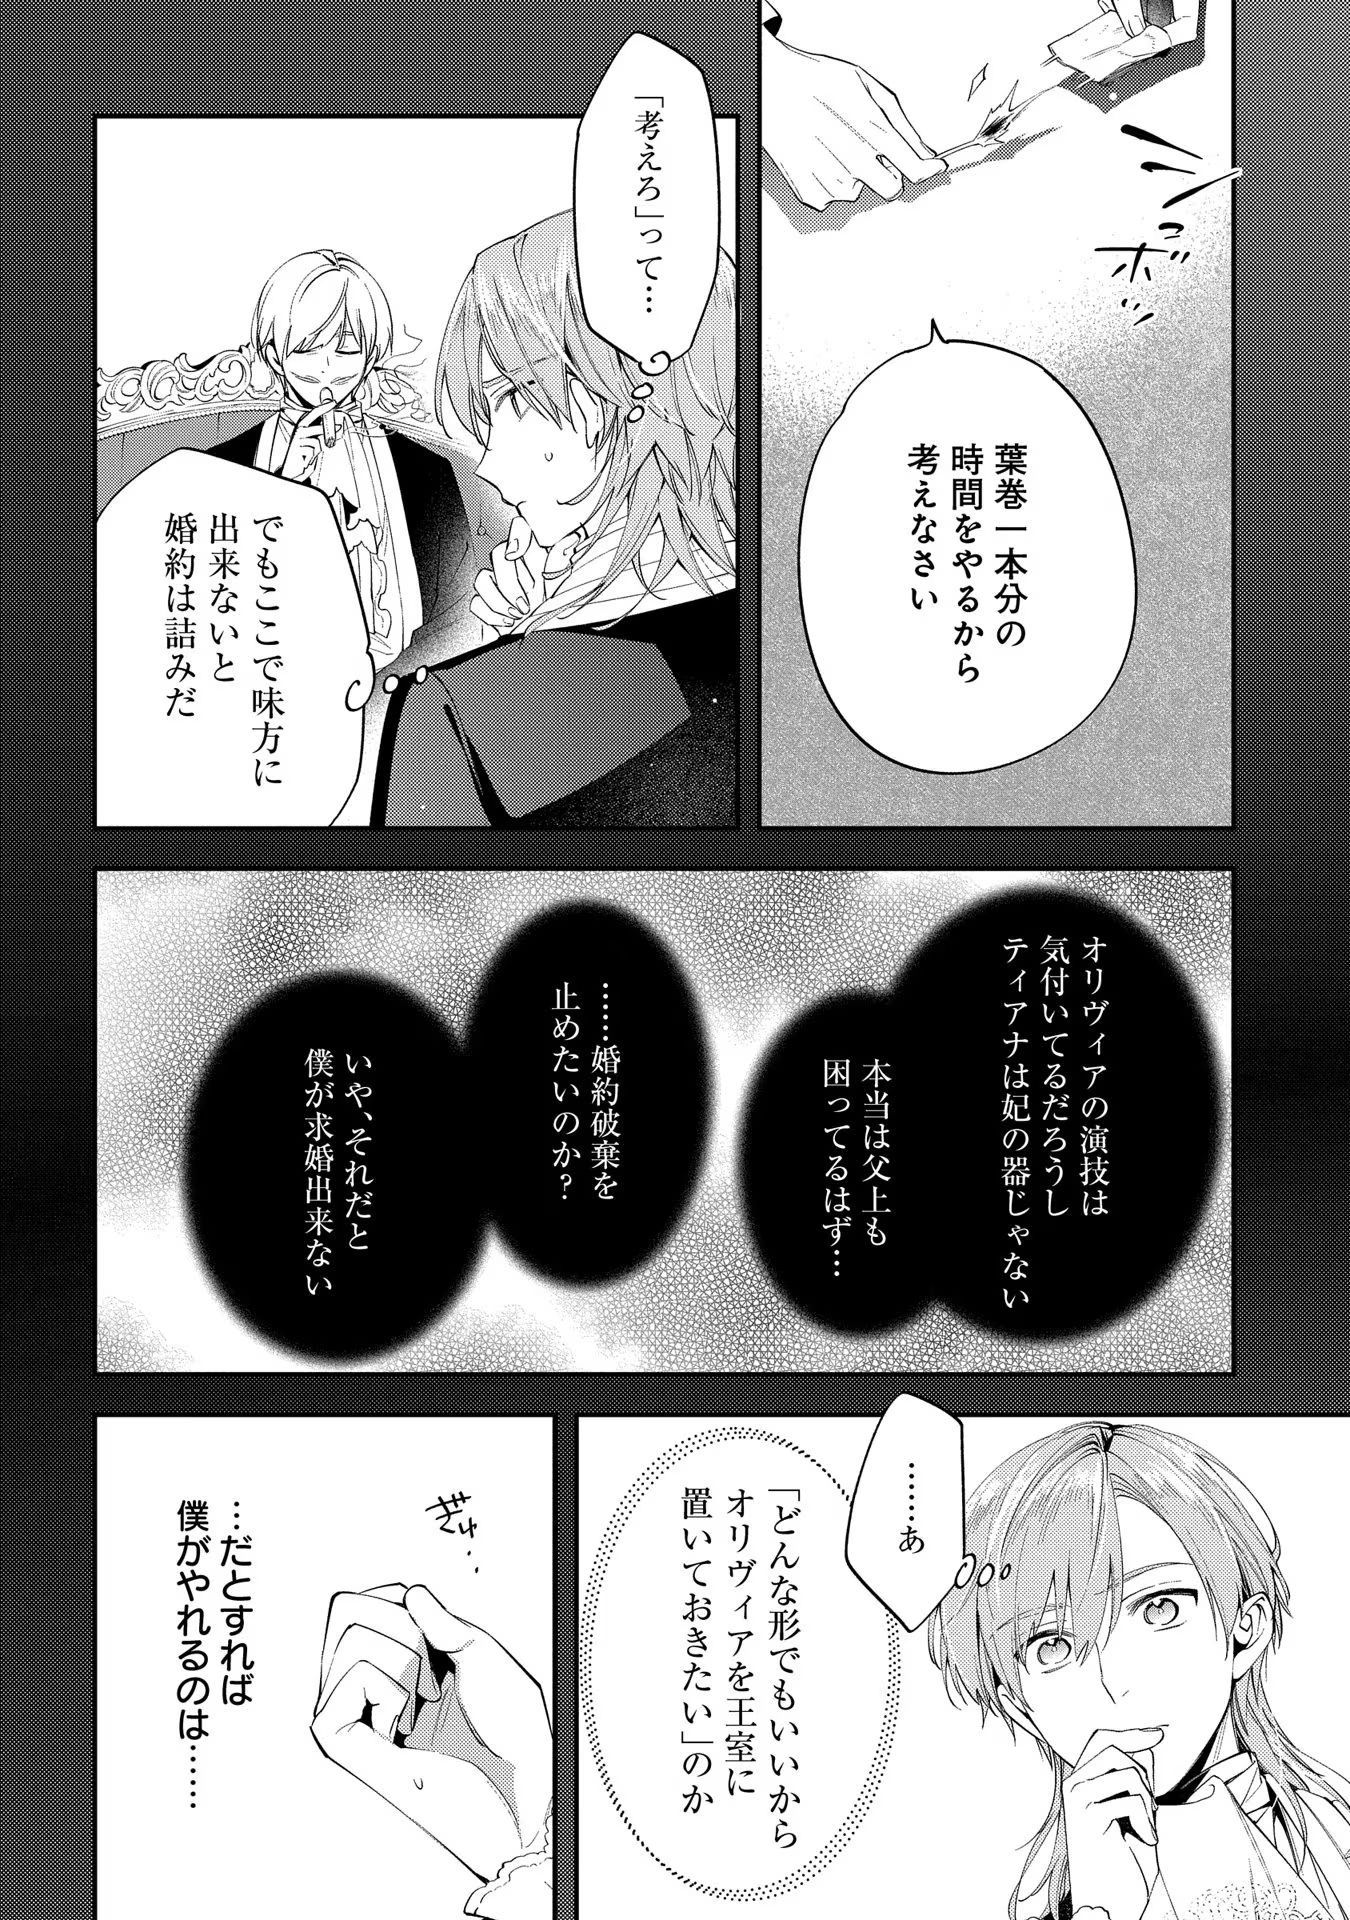 Outaishi ni Konyaku Hakisareta no de, Mou Baka no Furi wa Yameyou to Omoimasu - Chapter 9 - Page 26